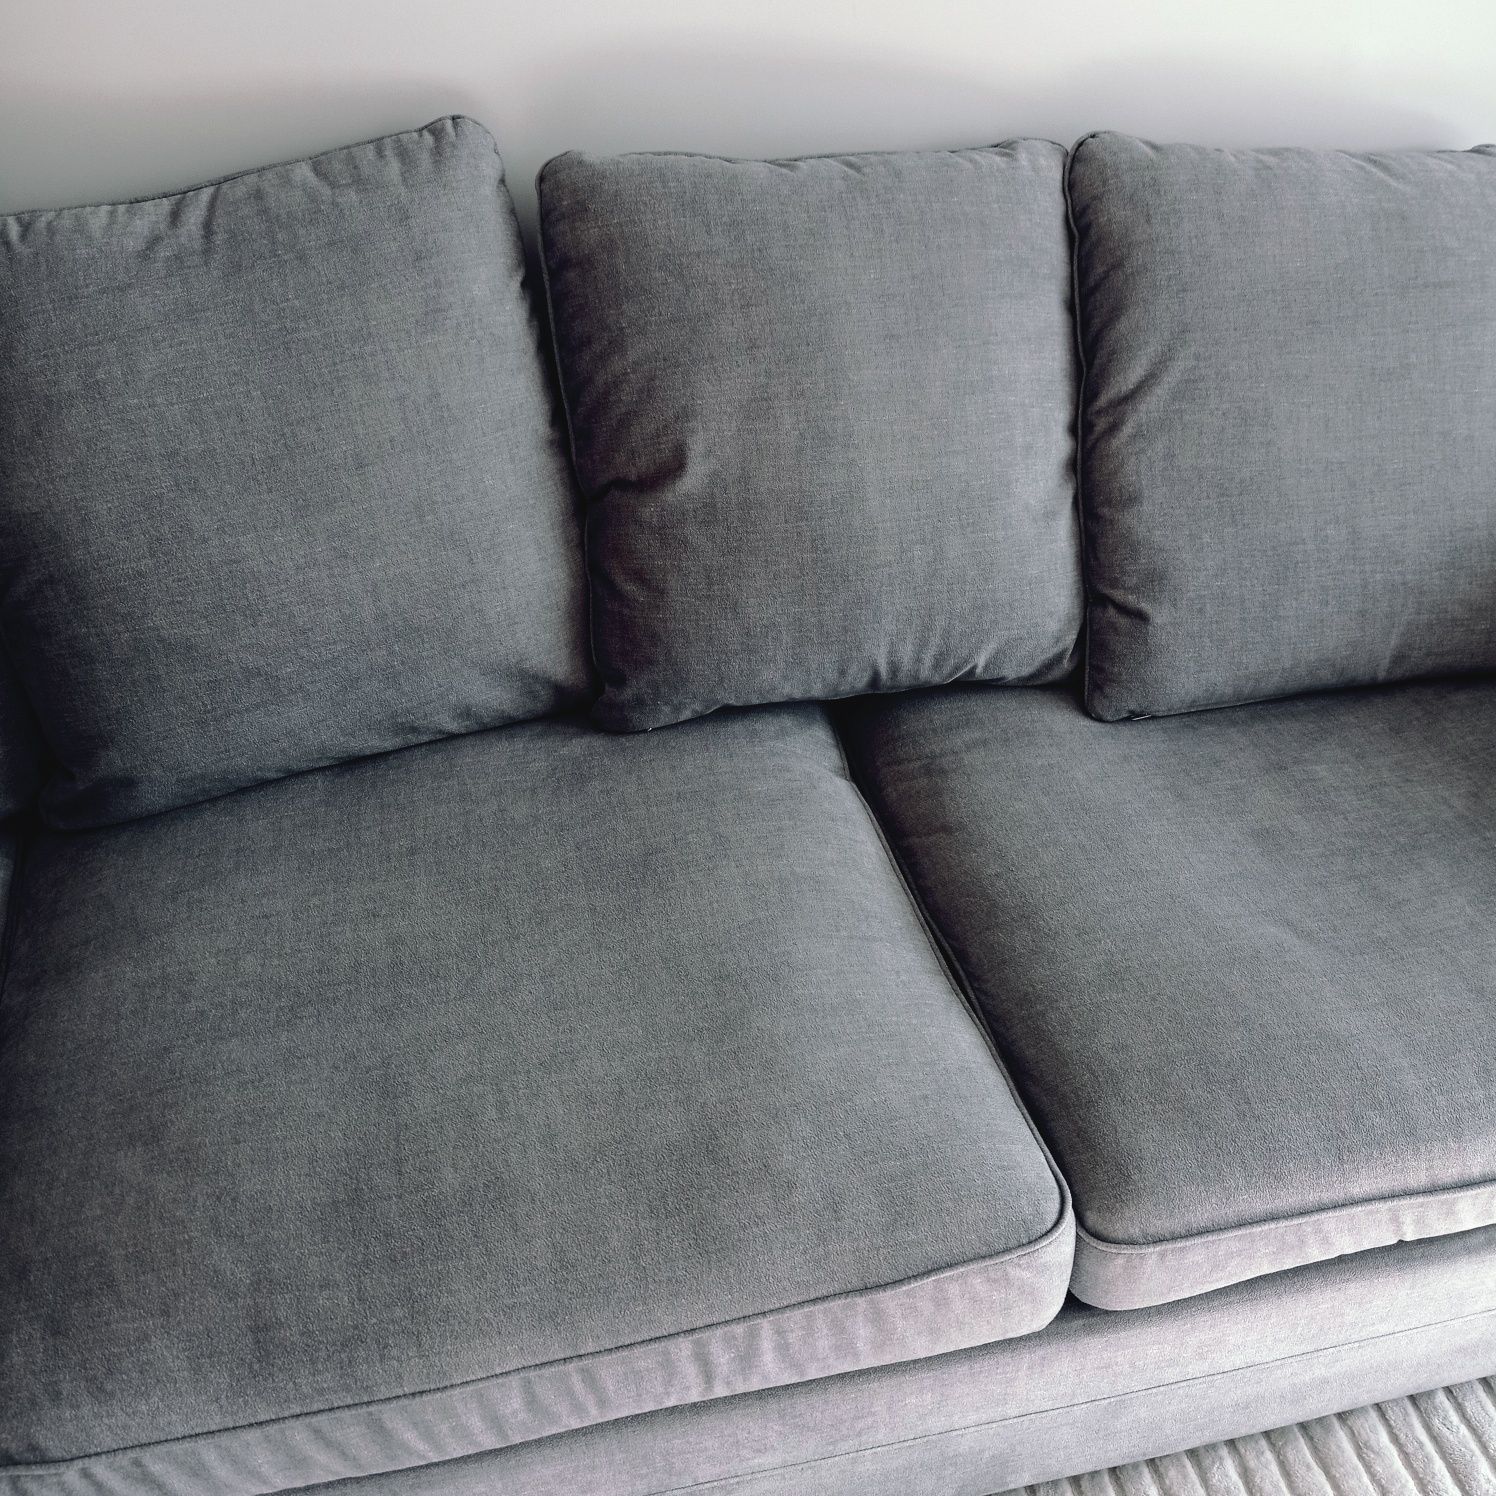 Pokrycie kanapy IKEA GRONLID Softi Light Grey szare siwe narożnej